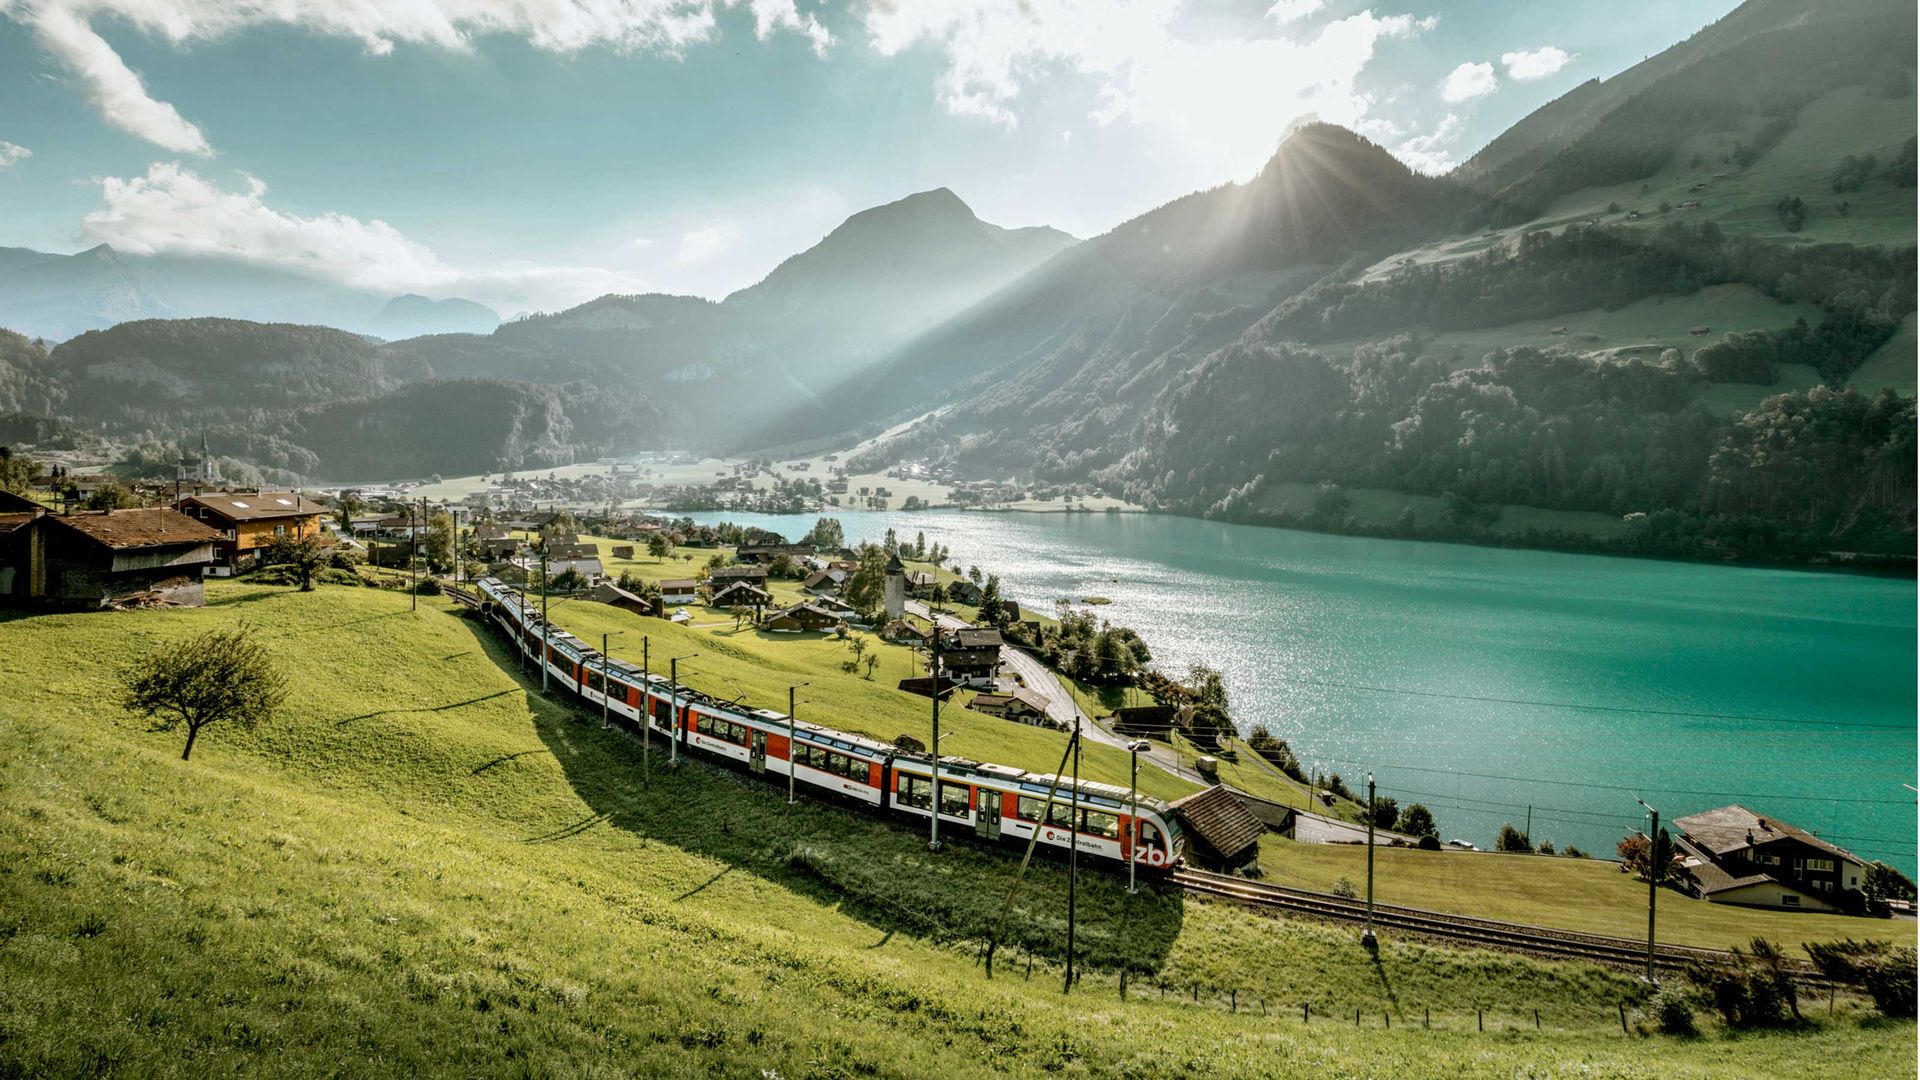 Un train voyageant à travers les montagnes près d'un lac.